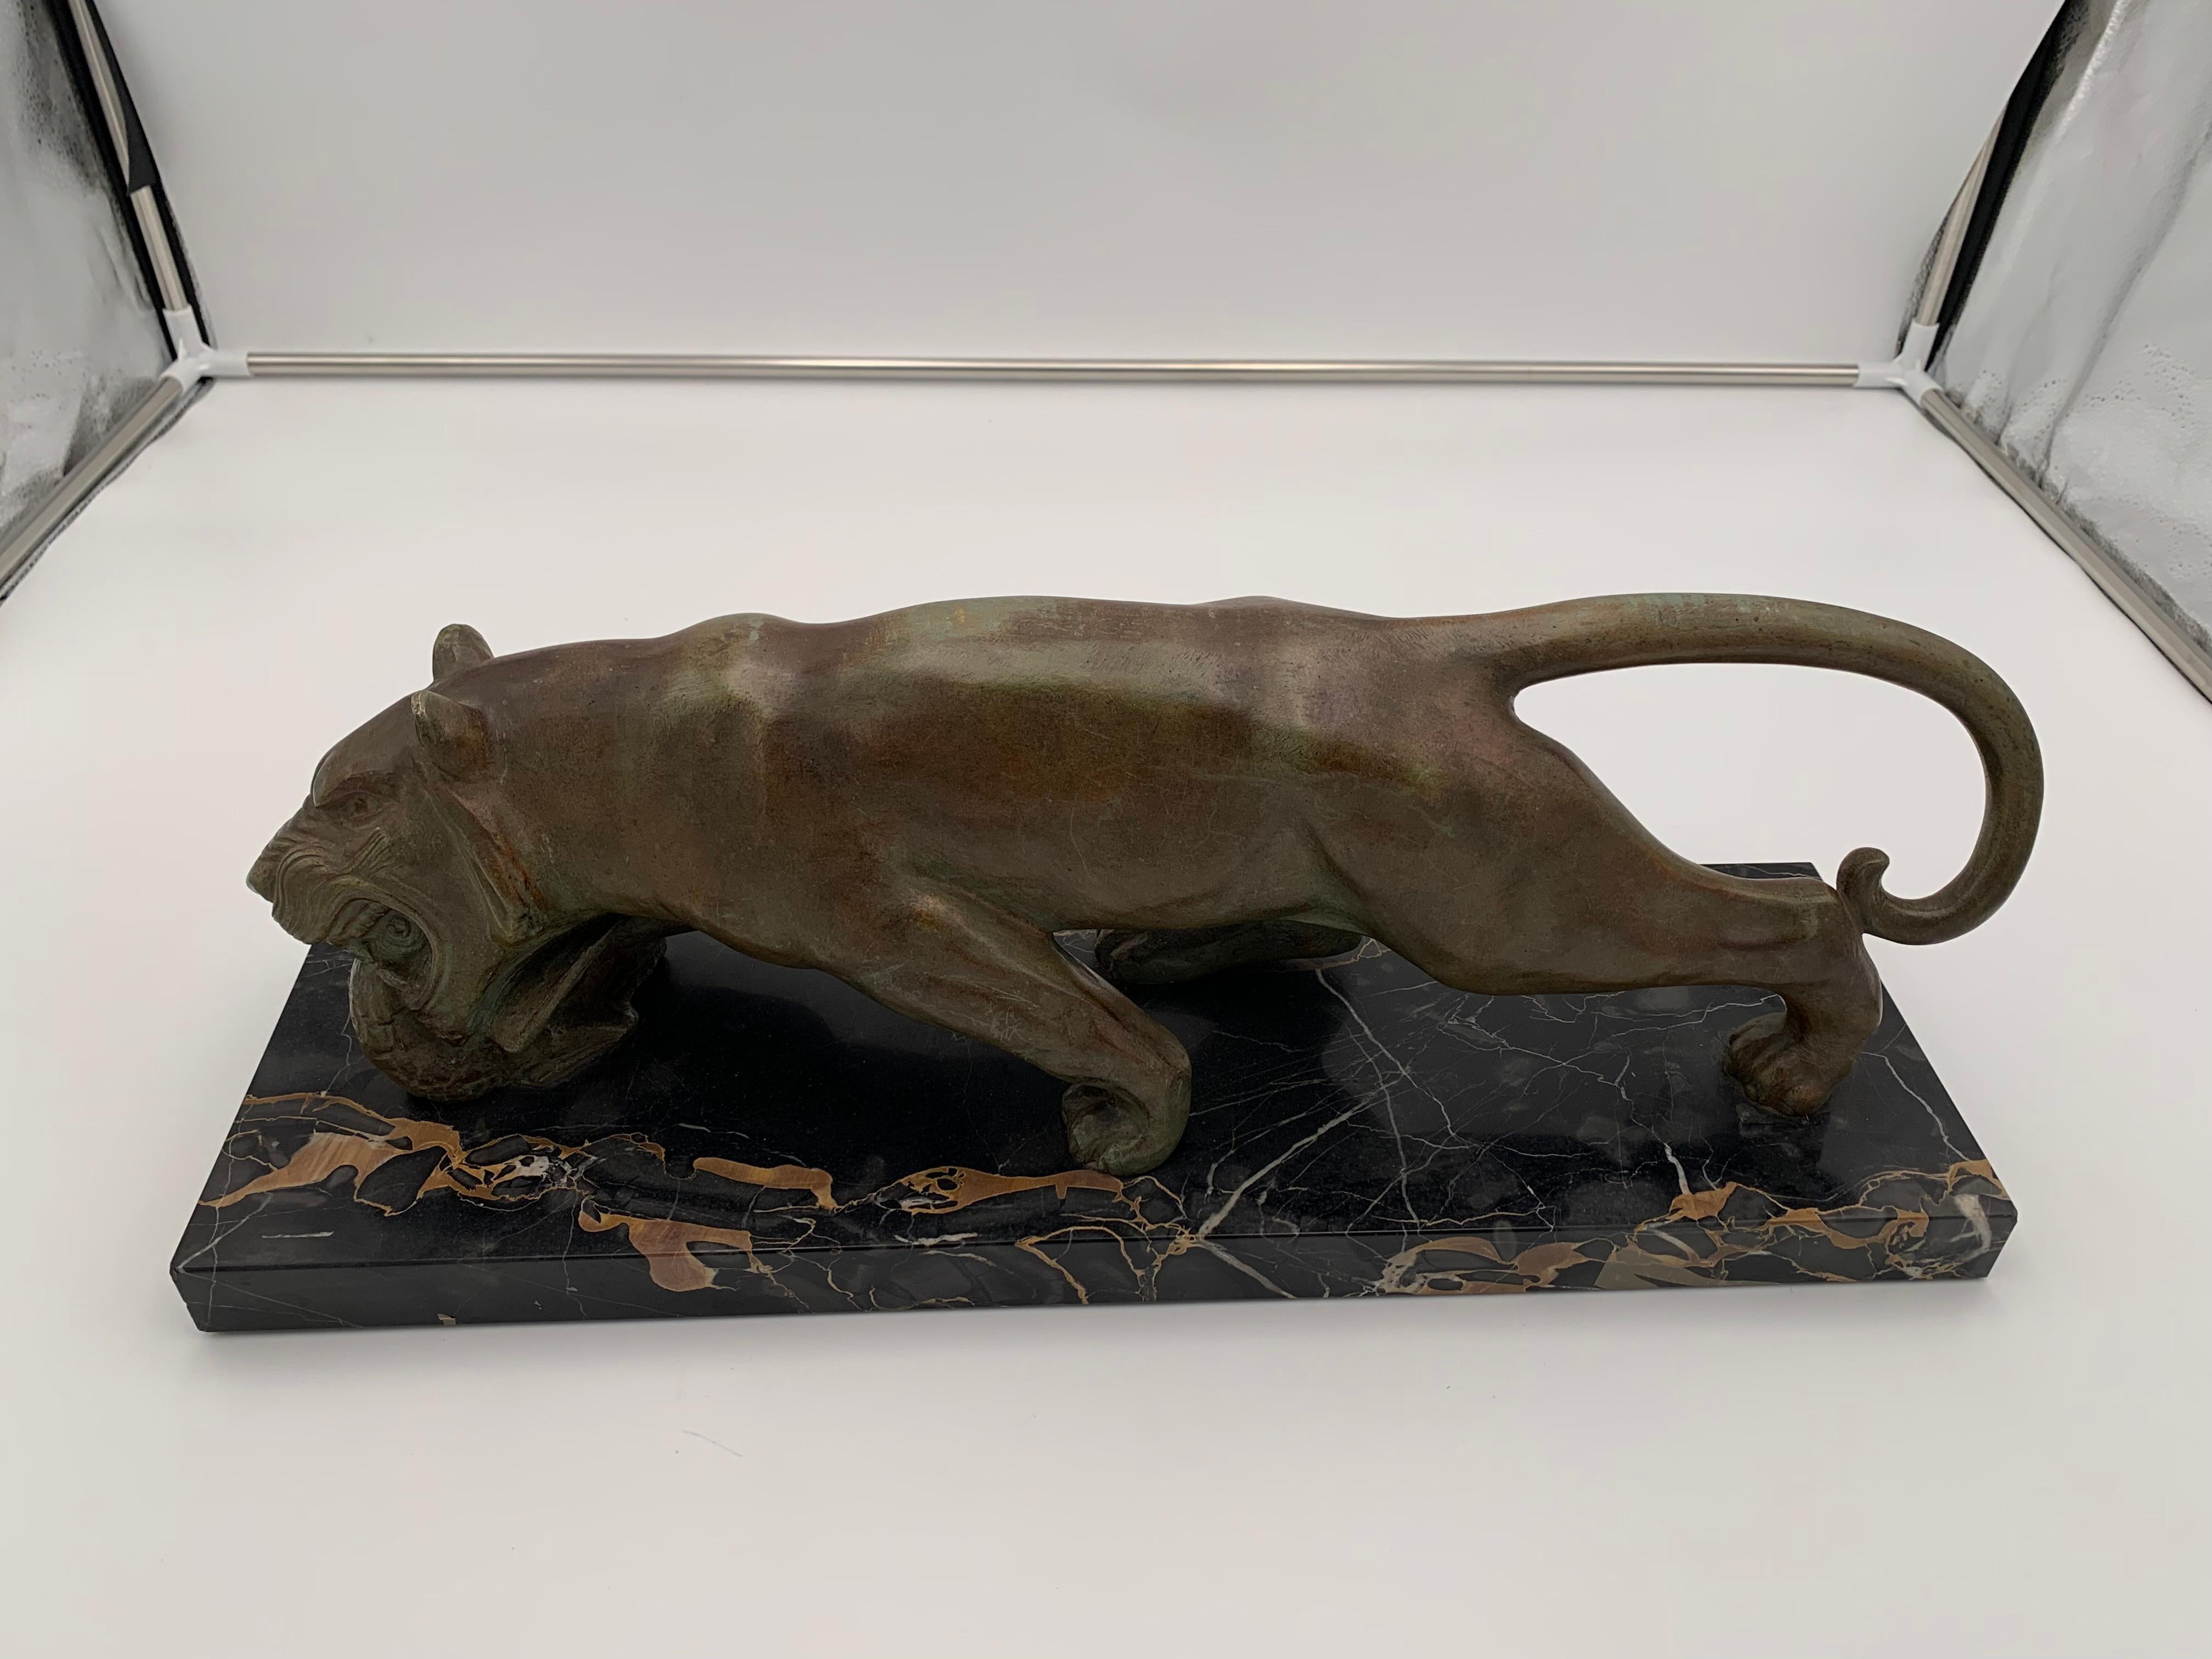 Très belle sculpture animalière Art Déco en bronze signée d'une panthère mangeuse de France vers 1930.

Signé : 